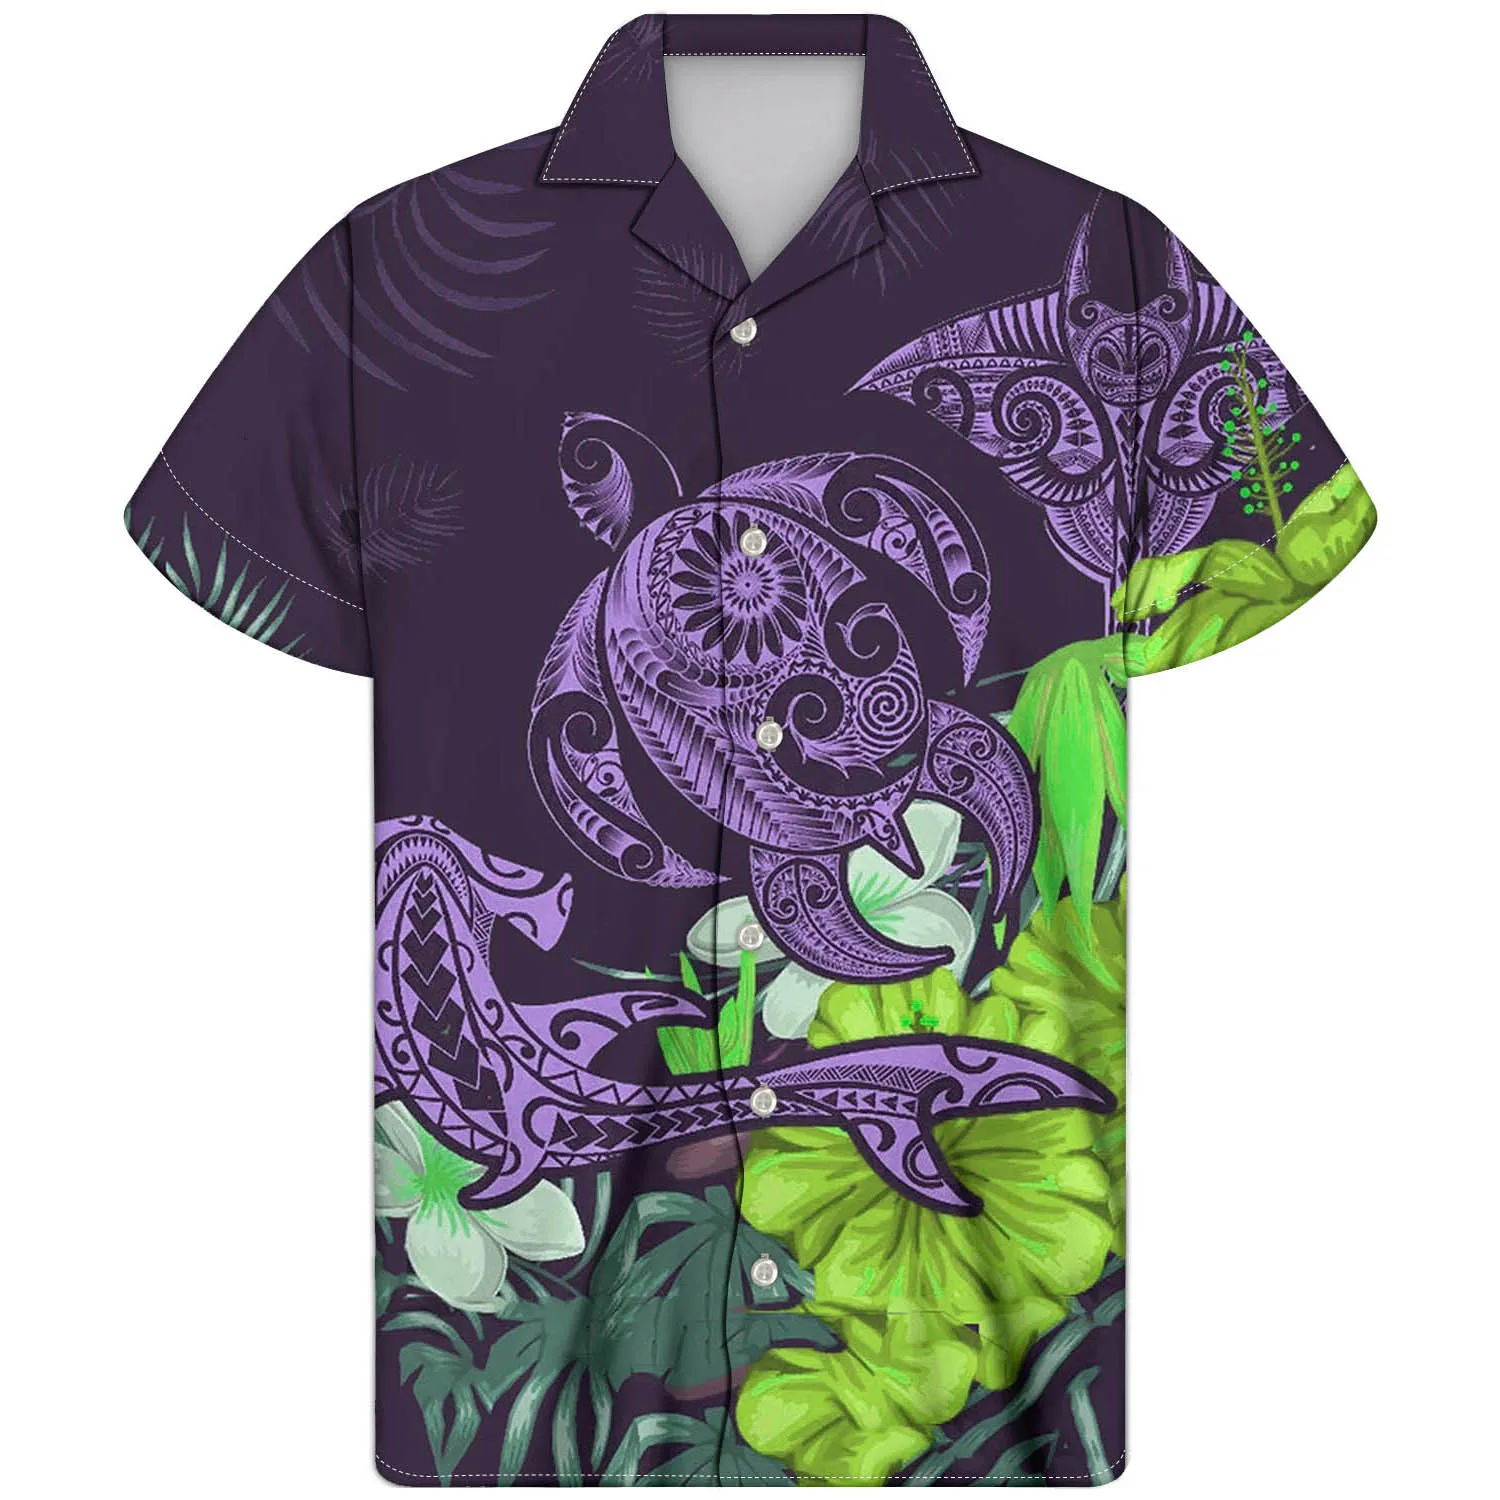 

Гавайская рубашка Aloha мужская с коротким рукавом, праздничная Повседневная сорочка с тропическим принтом, синяя с черепашкой, с цветочным п...